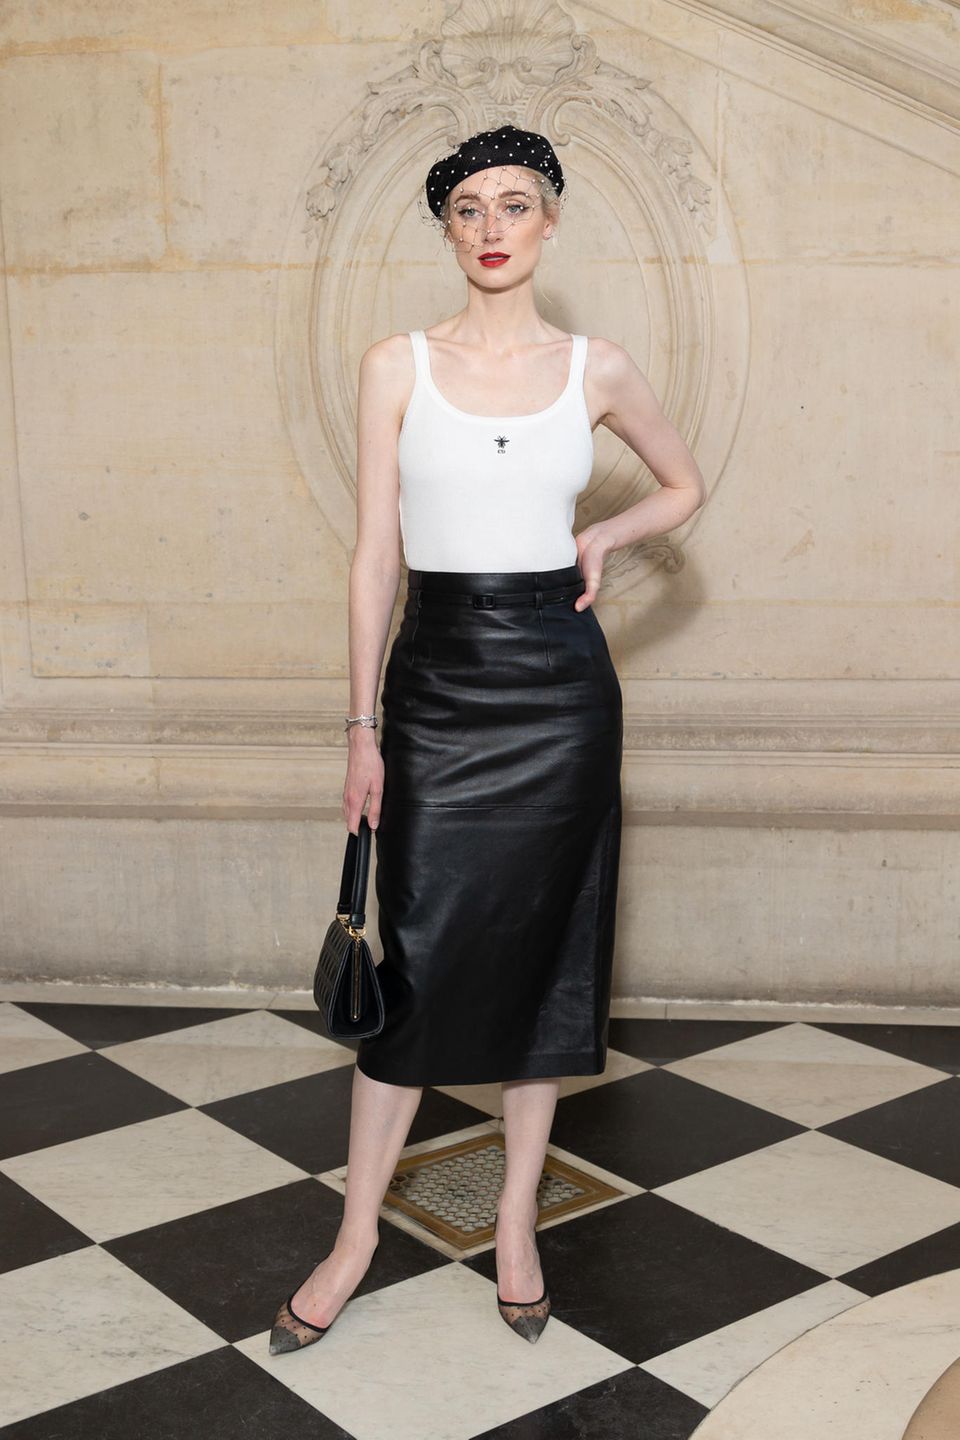 Klassischer kann ein Look kaum aussehen! Elizabeth Debicki erschient zur Dior-Show mit Barret, weißem Top und Lederrock. Spitze Pumps und eine Vintage-Tasche runden den Look ab. 